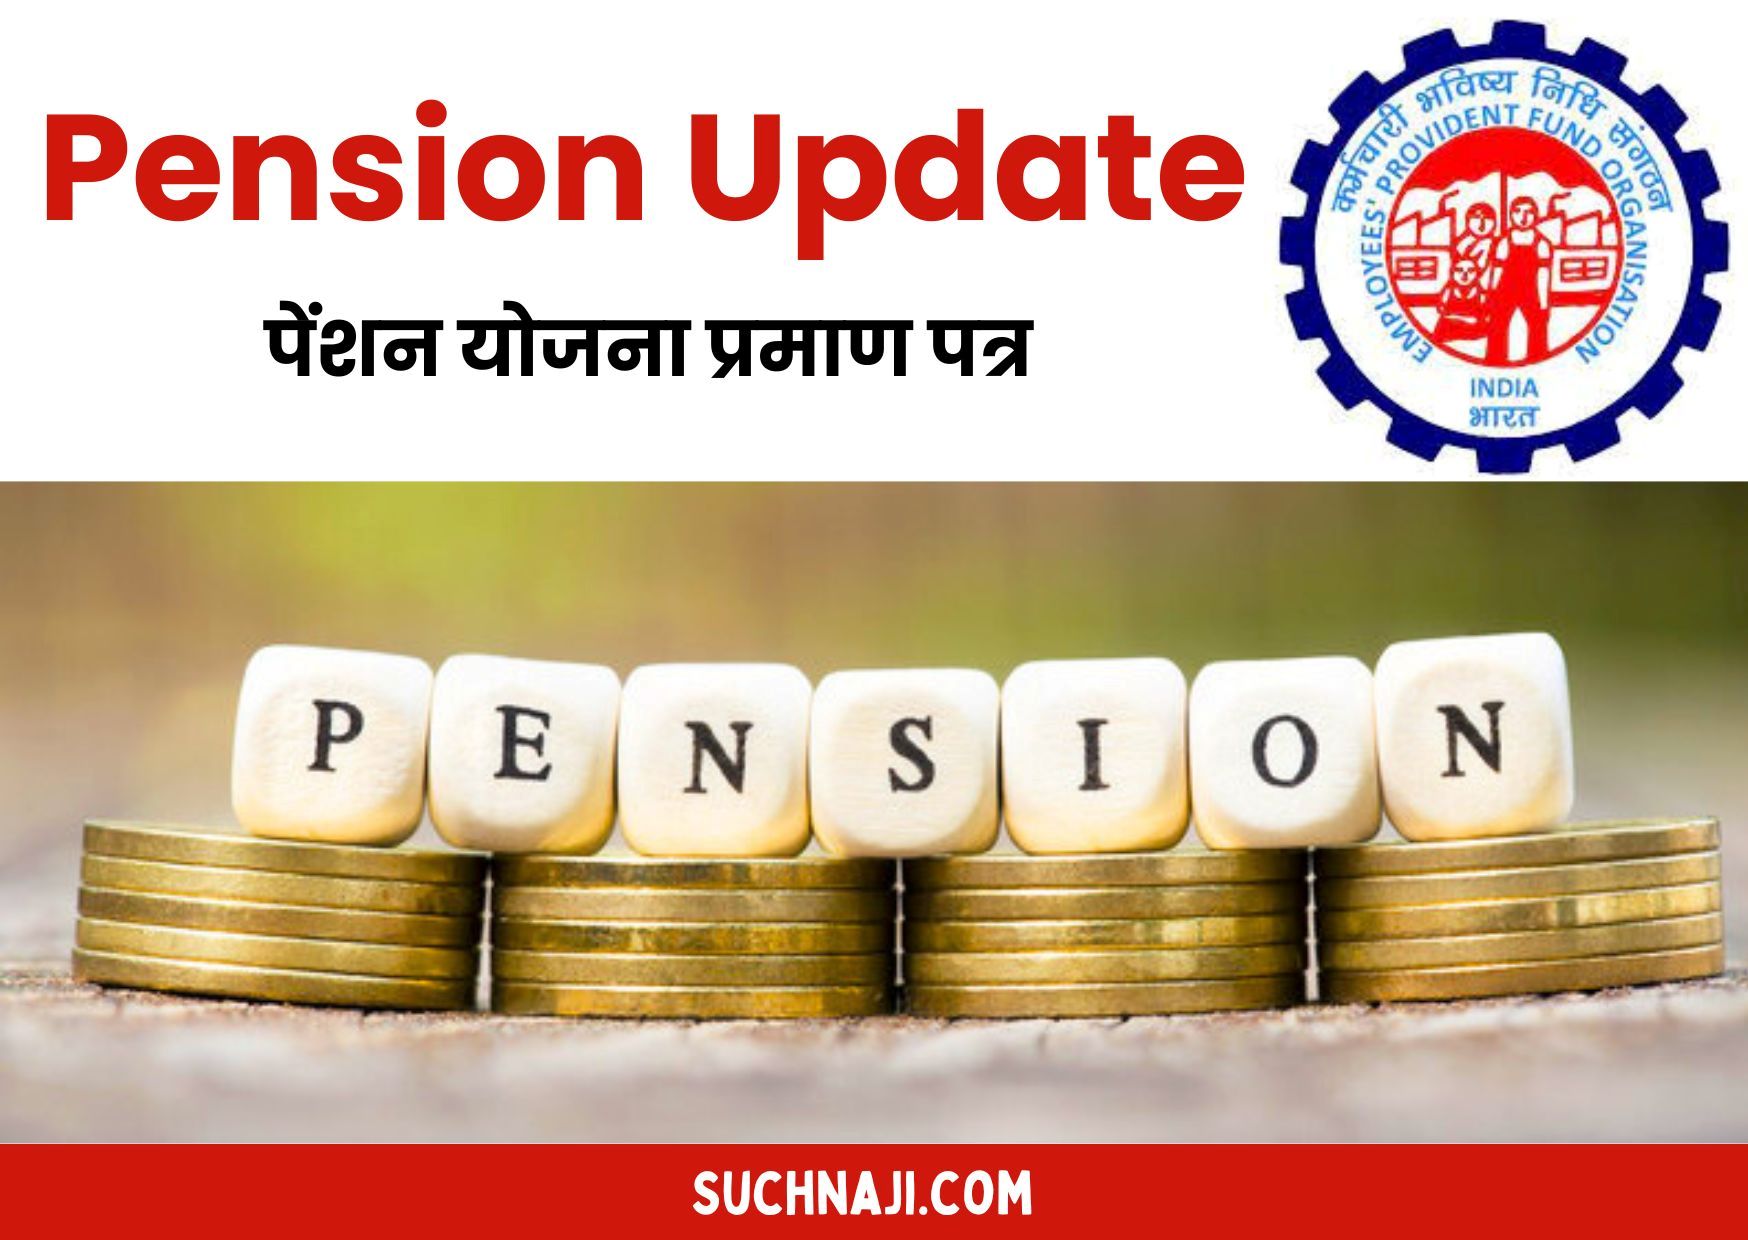 Pension Update: पेंशन योजना प्रमाण पत्र के बारे में जानिए, वरना भारी-भरकम नुकसान